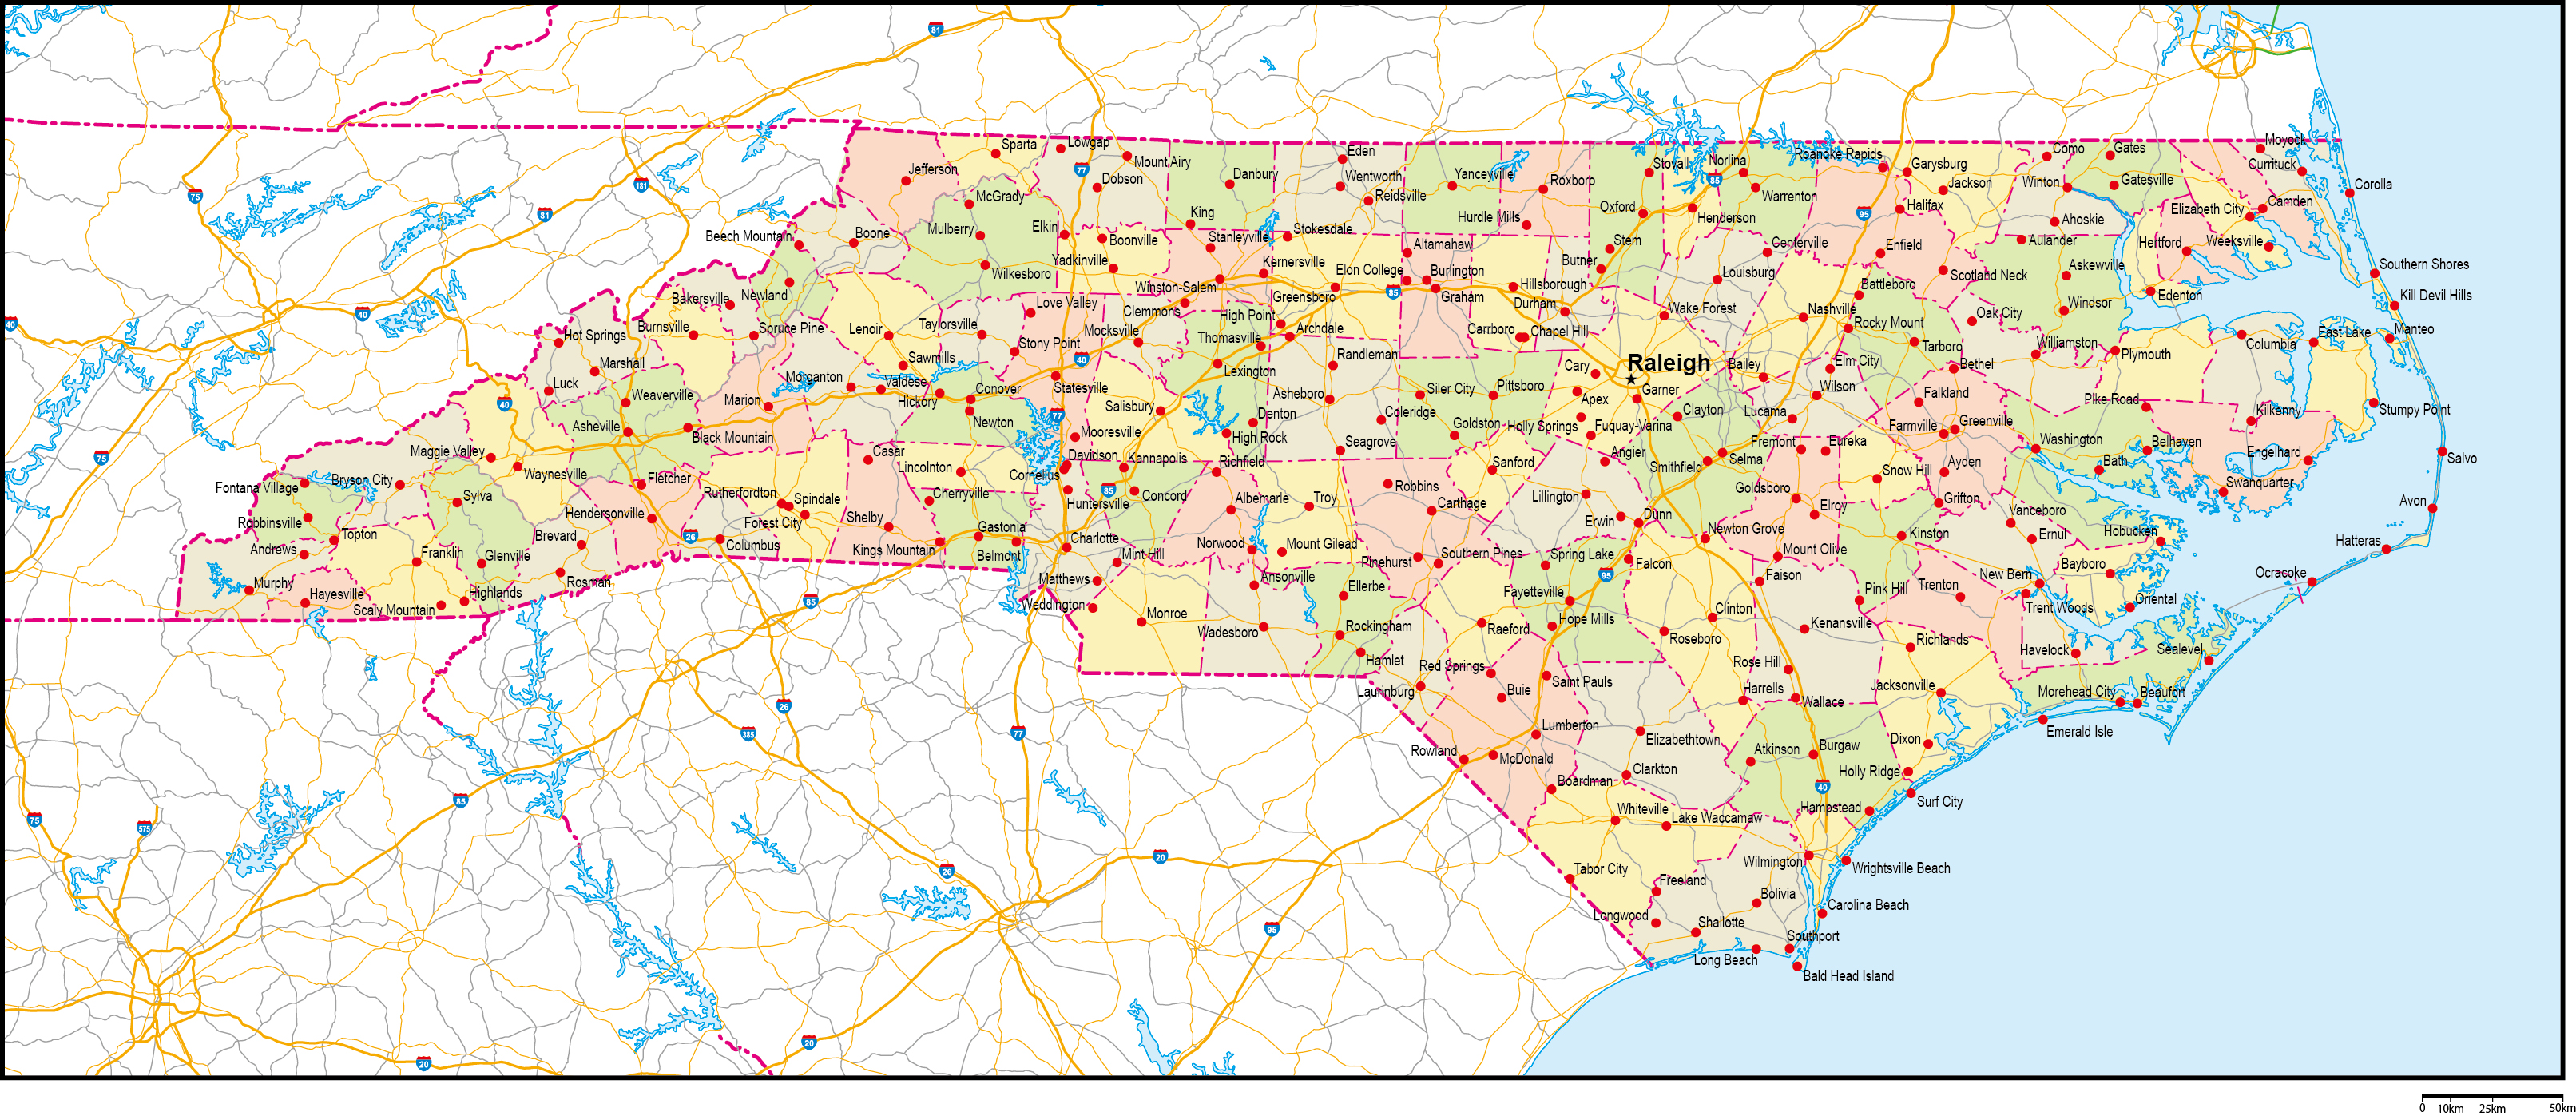 ノースカロライナ州郡色分け地図州都・主な都市・道路あり(英語)フリーデータの画像